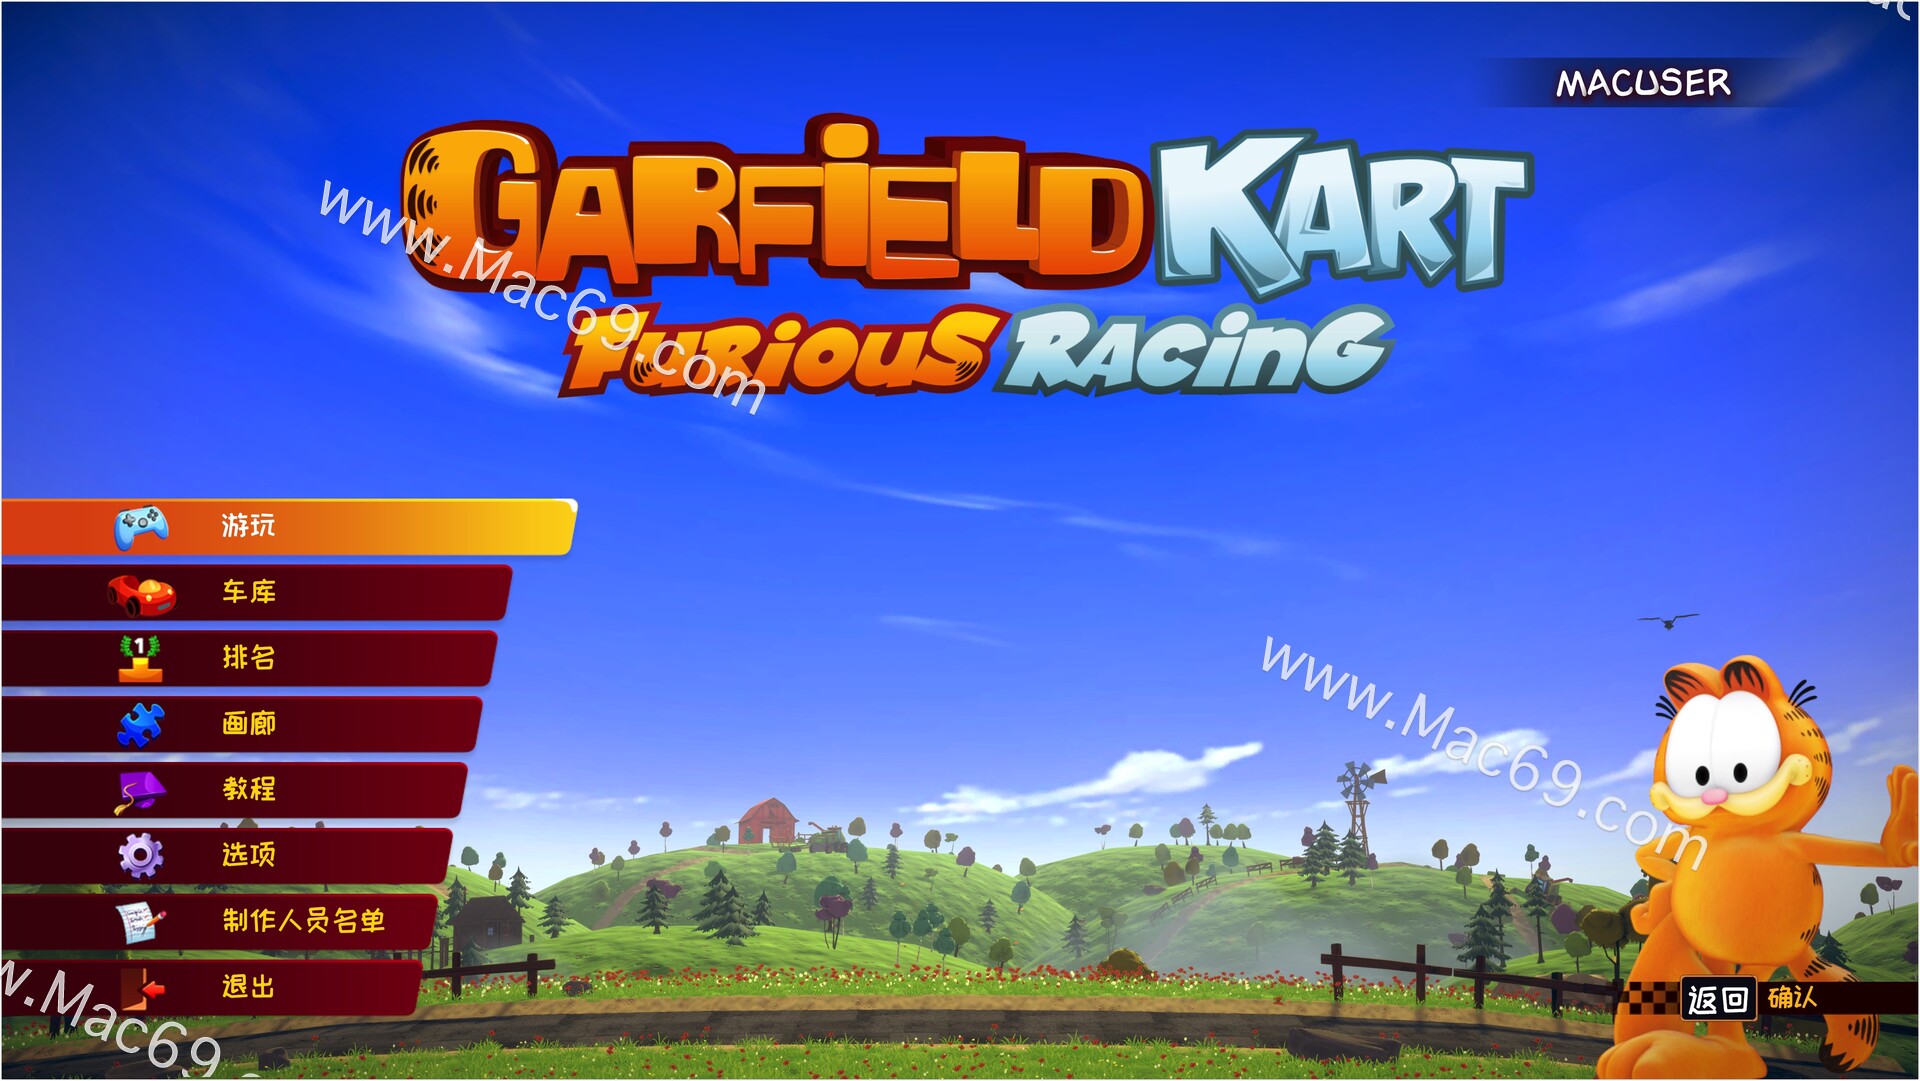 加菲猫卡丁车:激情竞速Garfield Kart Furious Racing Mac(卡通赛车竞速游戏)原生版